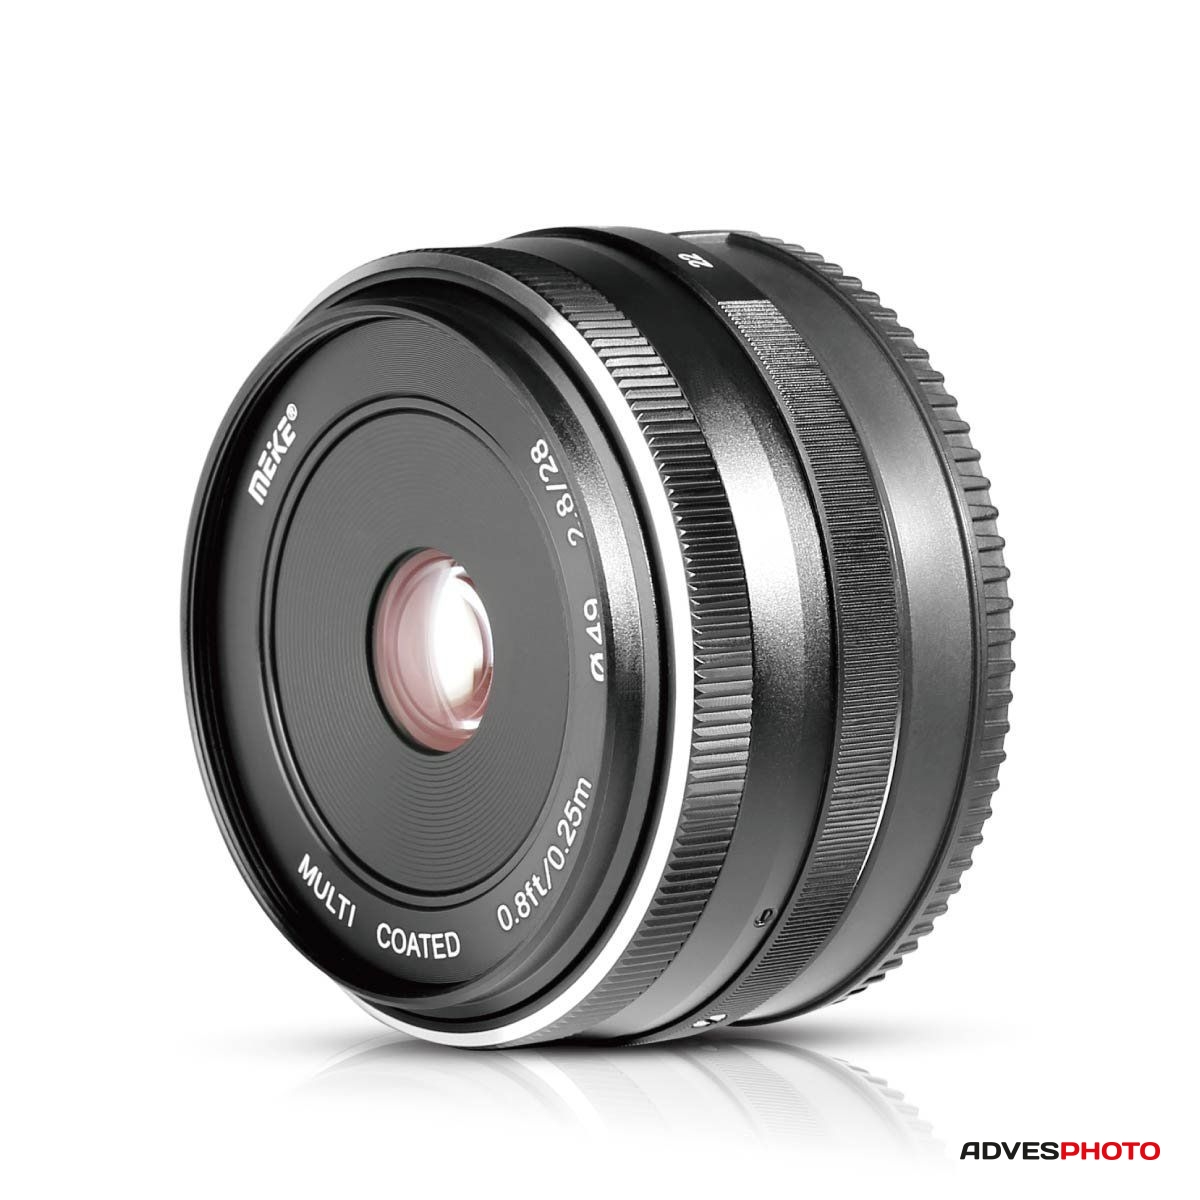 Meike 28mm f / 2.8 fix objektív Sony tükör nélküli fényképezőgéphez